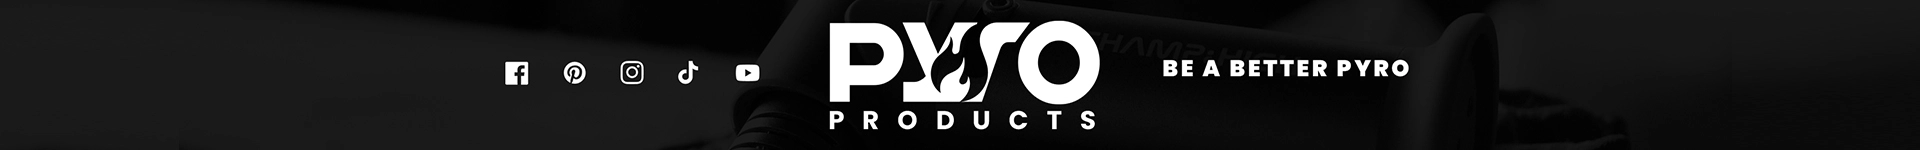 PyroProducts Hintergrund